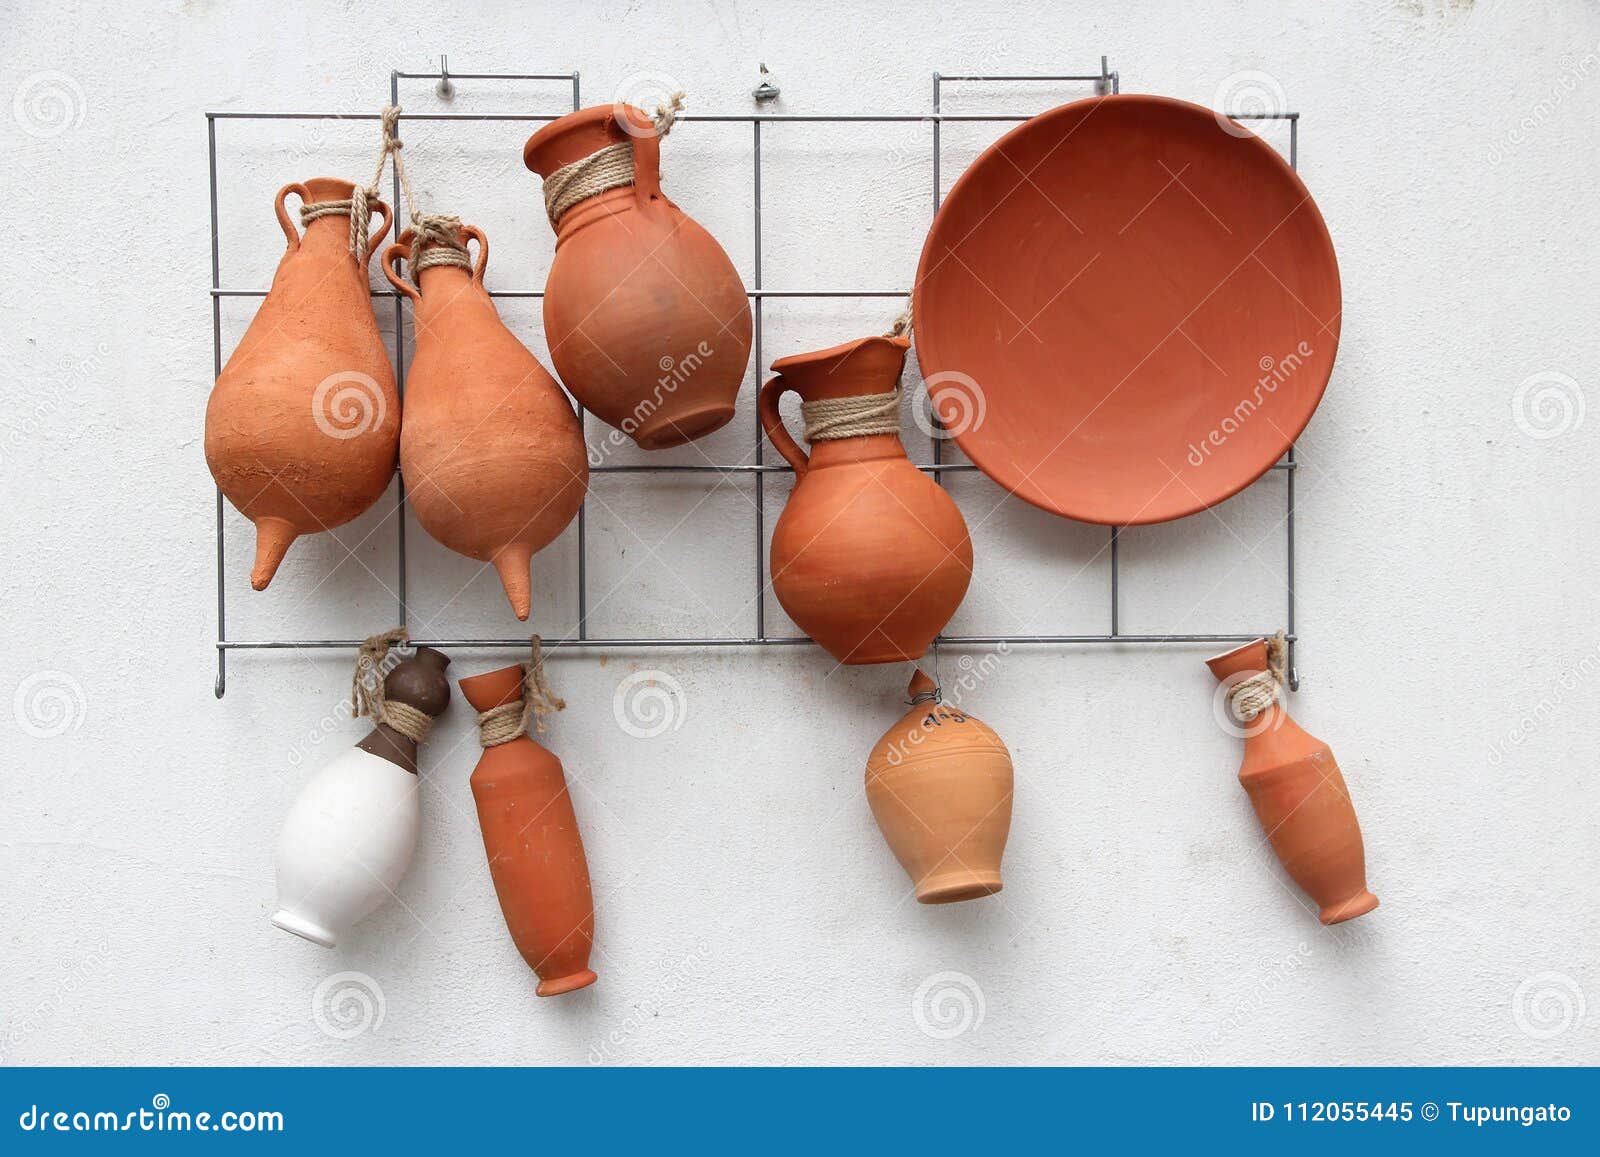 Spanish Clay Pot 